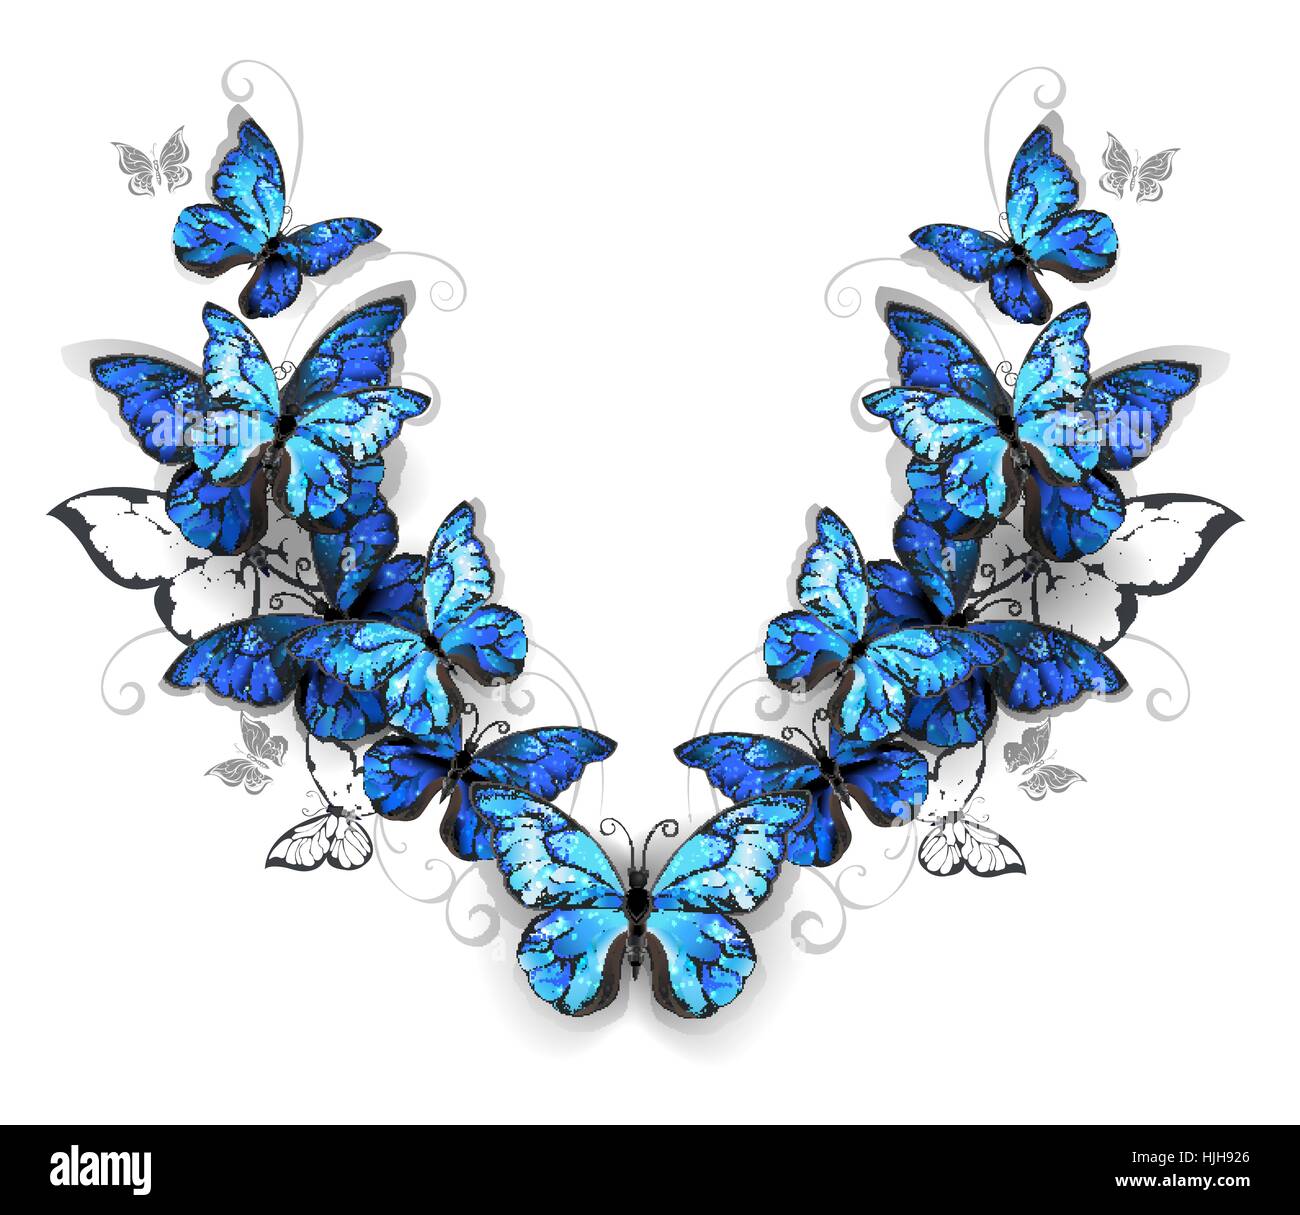 Symmetrische Muster Blau, realistische Morfid Schmetterlinge auf weißem Hintergrund. Design mit Schmetterlingen. Morpho. Design mit blauer Schmetterlinge Morpho. Stock Vektor